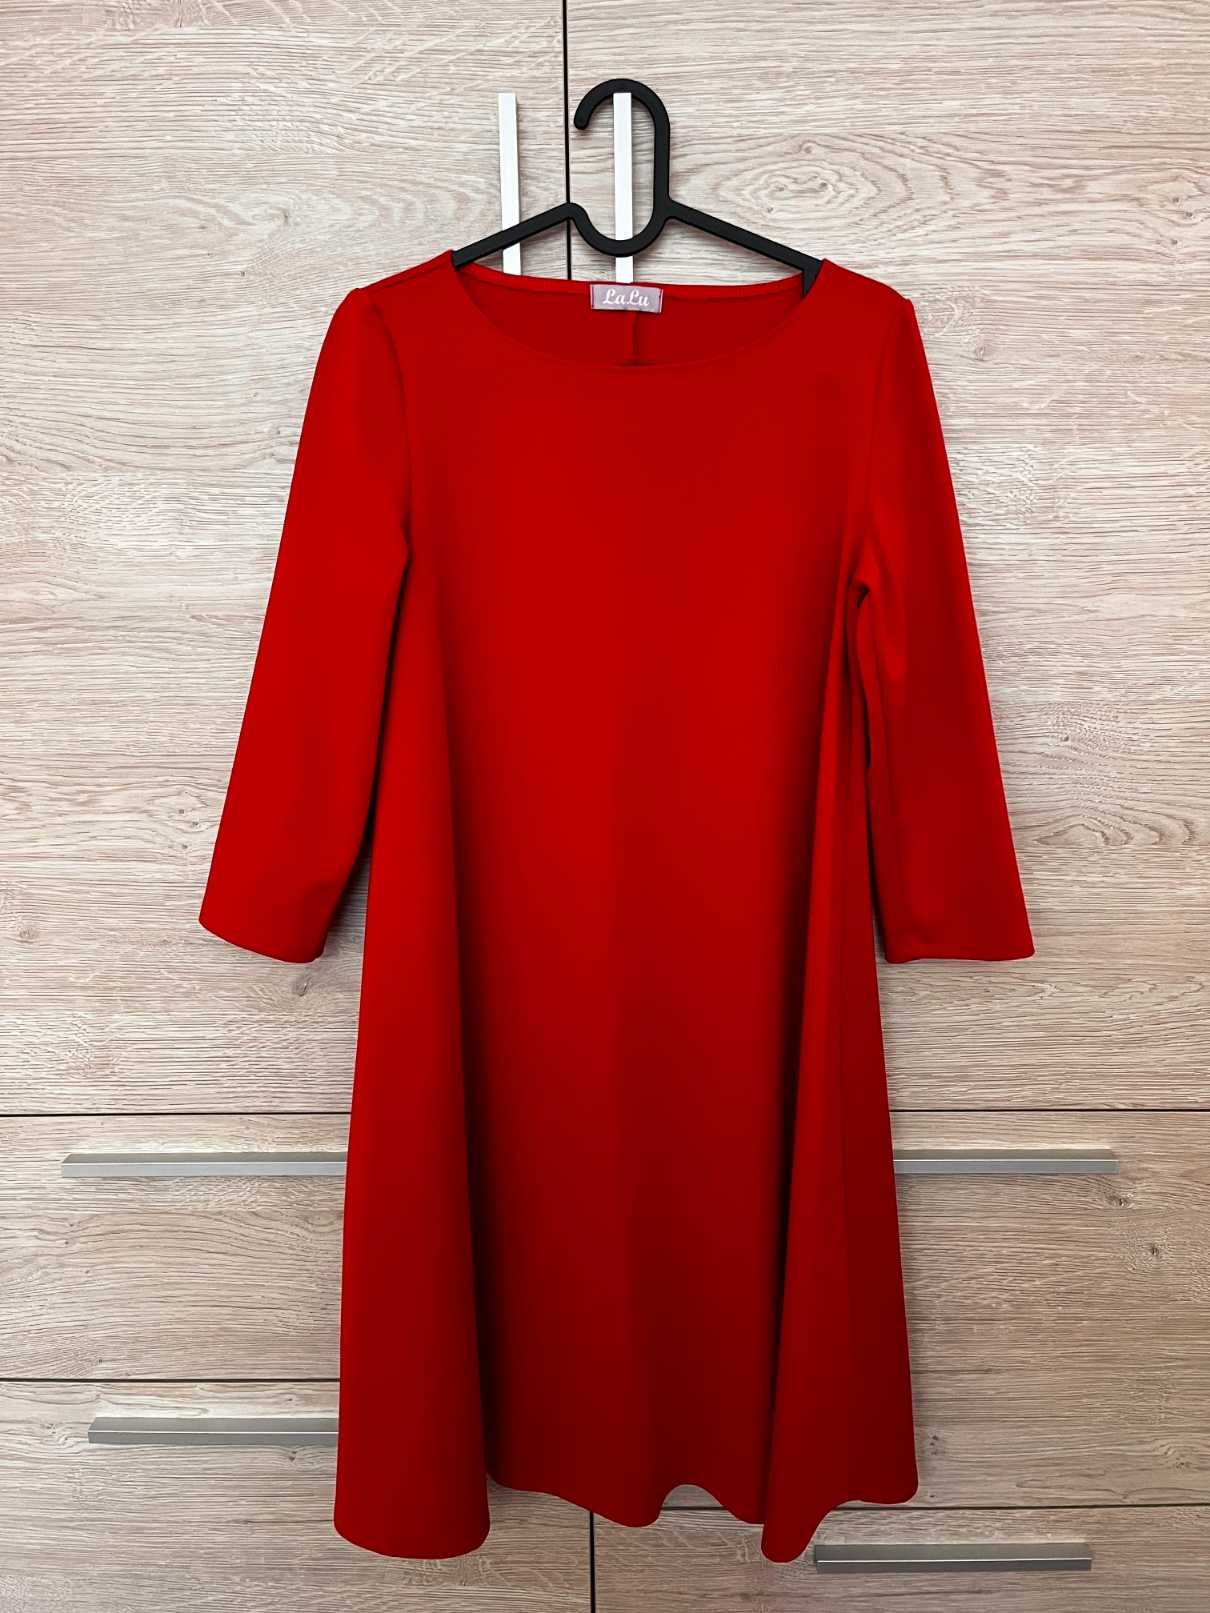 36, czerwona sukienka ciążowa - nowa